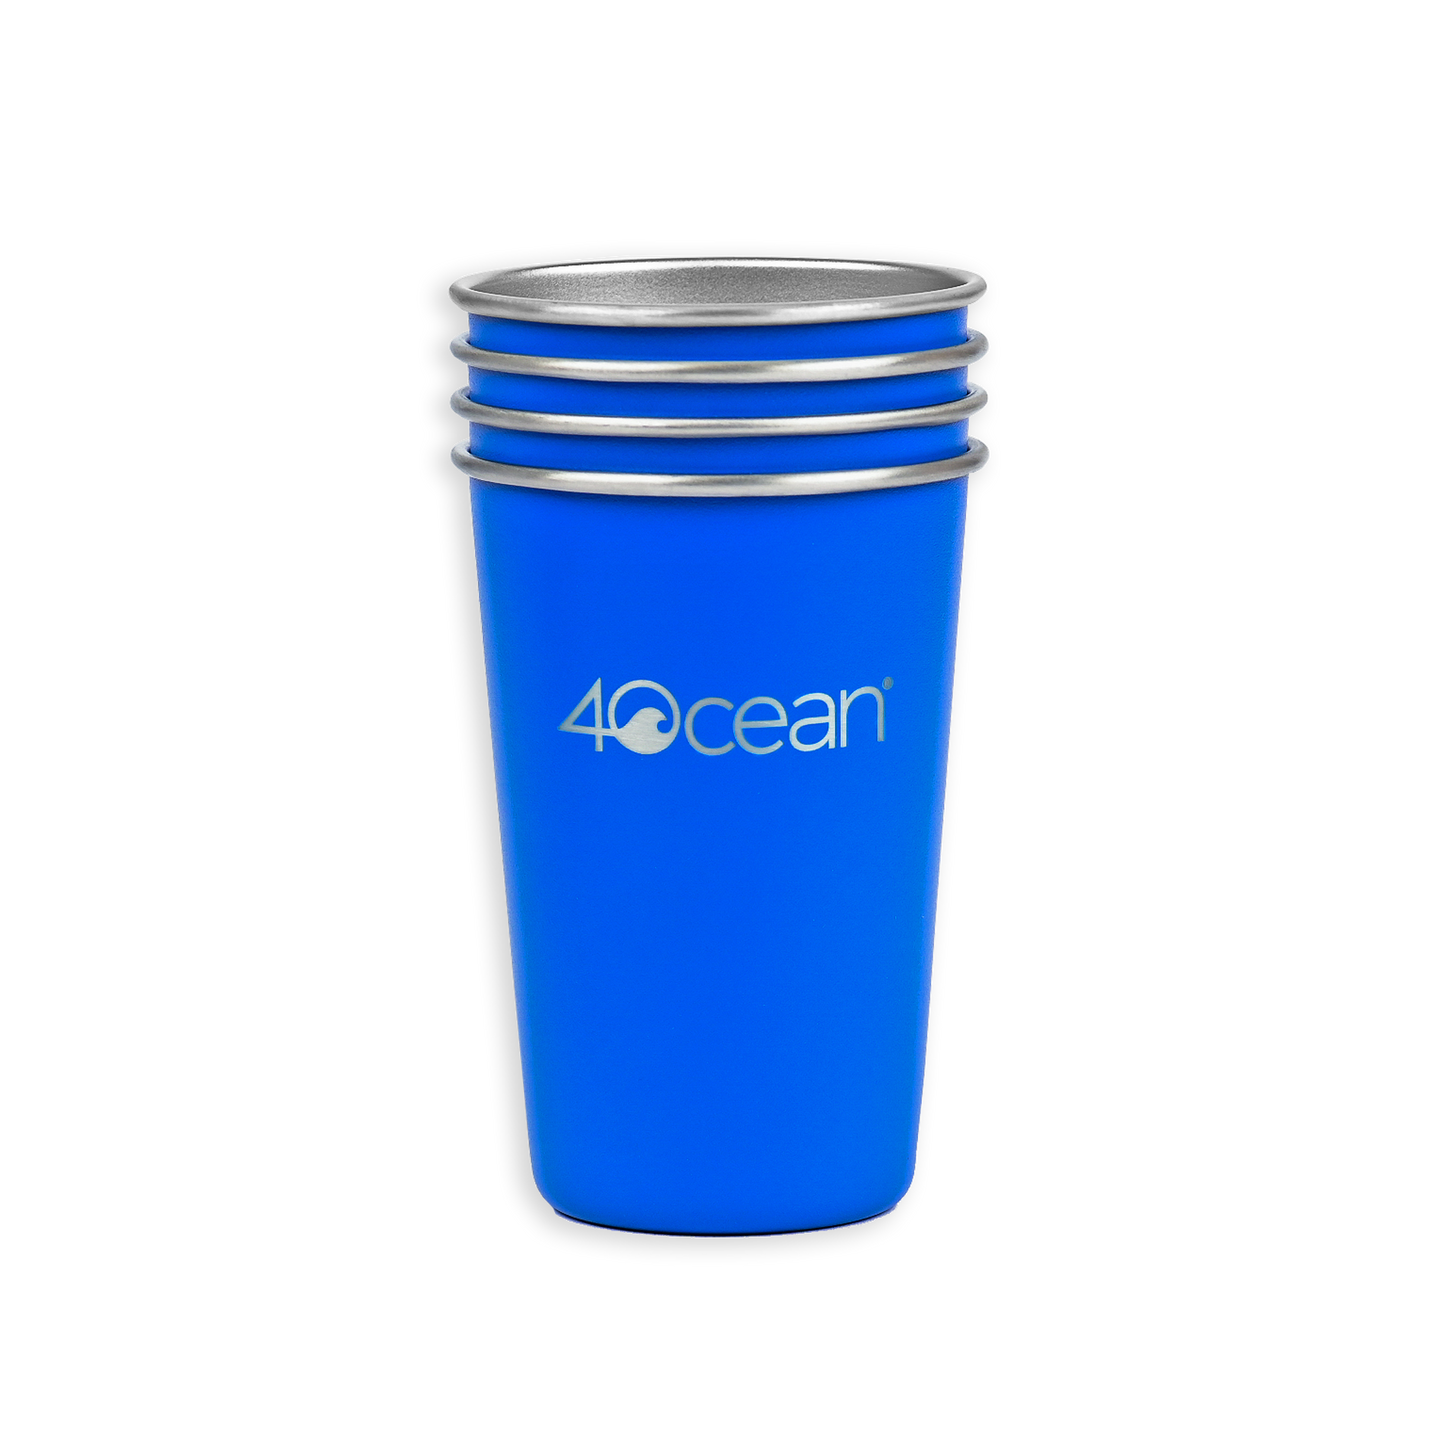 4ocean Reusable Stainless Steel Cups 4-Pack - 4ocean